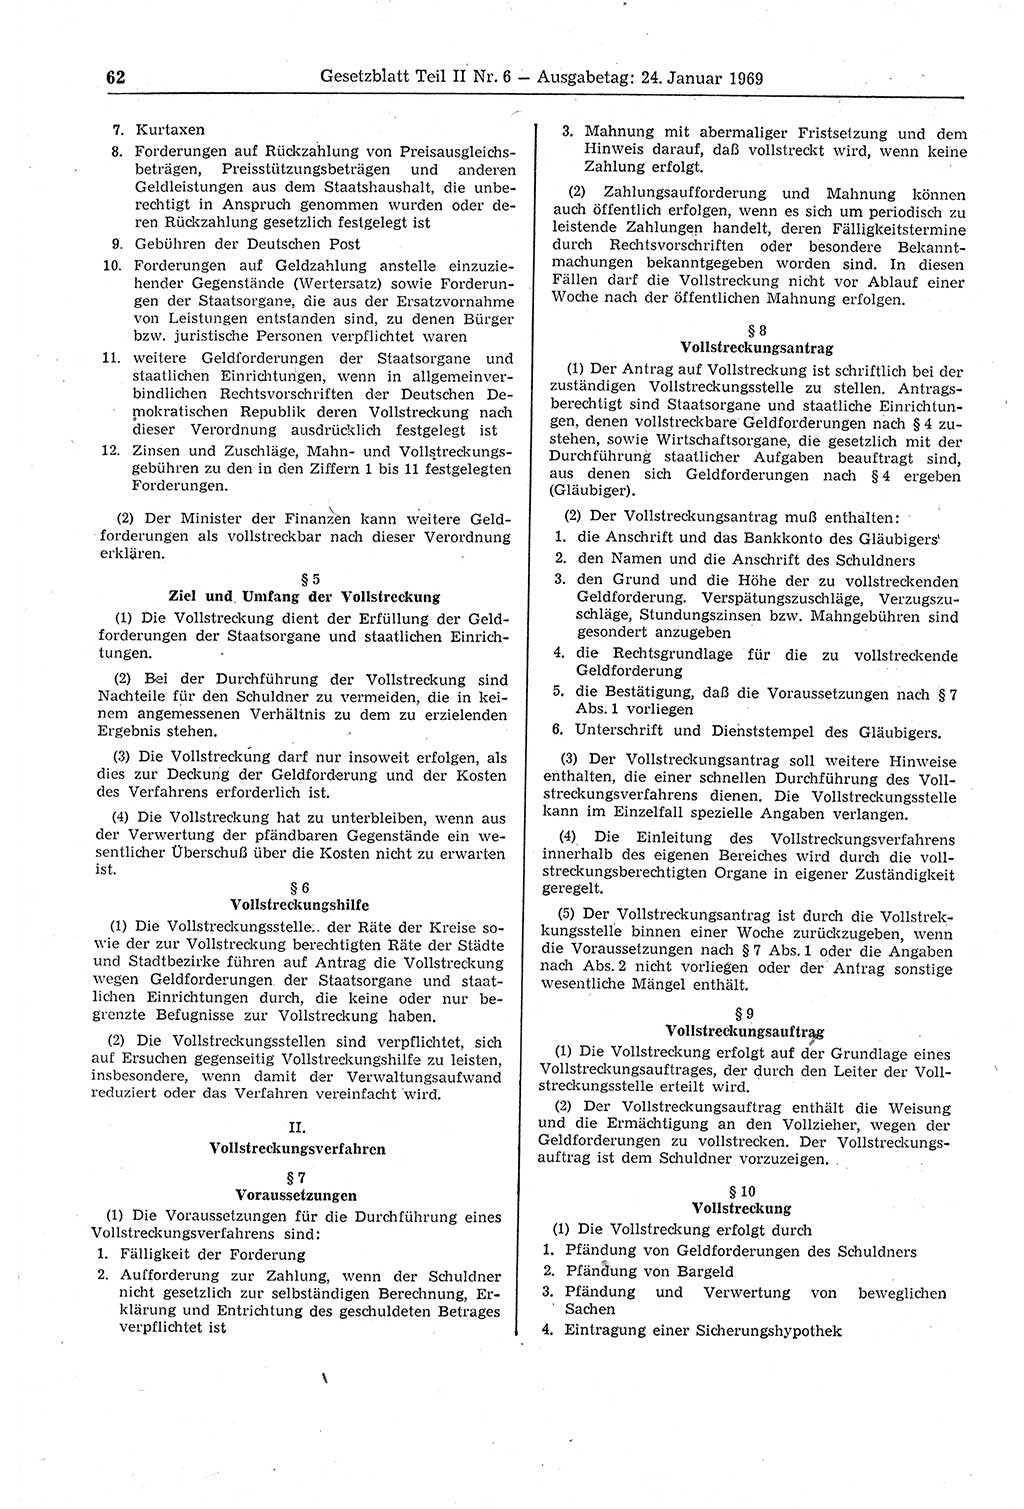 Gesetzblatt (GBl.) der Deutschen Demokratischen Republik (DDR) Teil ⅠⅠ 1969, Seite 62 (GBl. DDR ⅠⅠ 1969, S. 62)